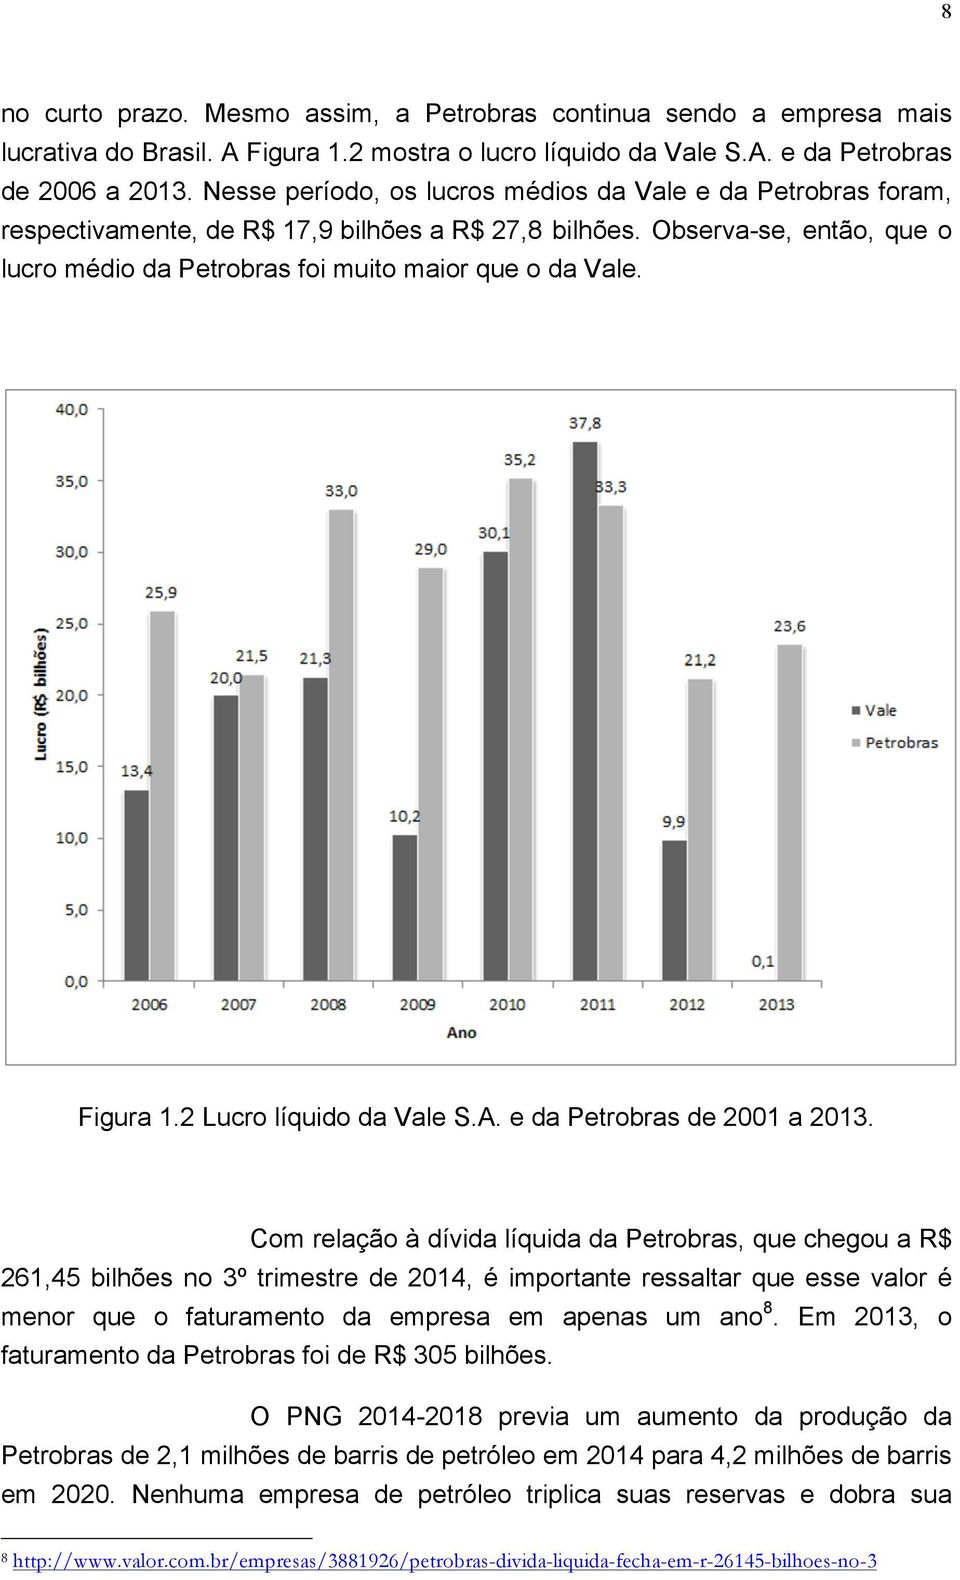 Figura 1.2 Lucro líquido da Vale S.A. e da Petrobras de 2001 a 2013.